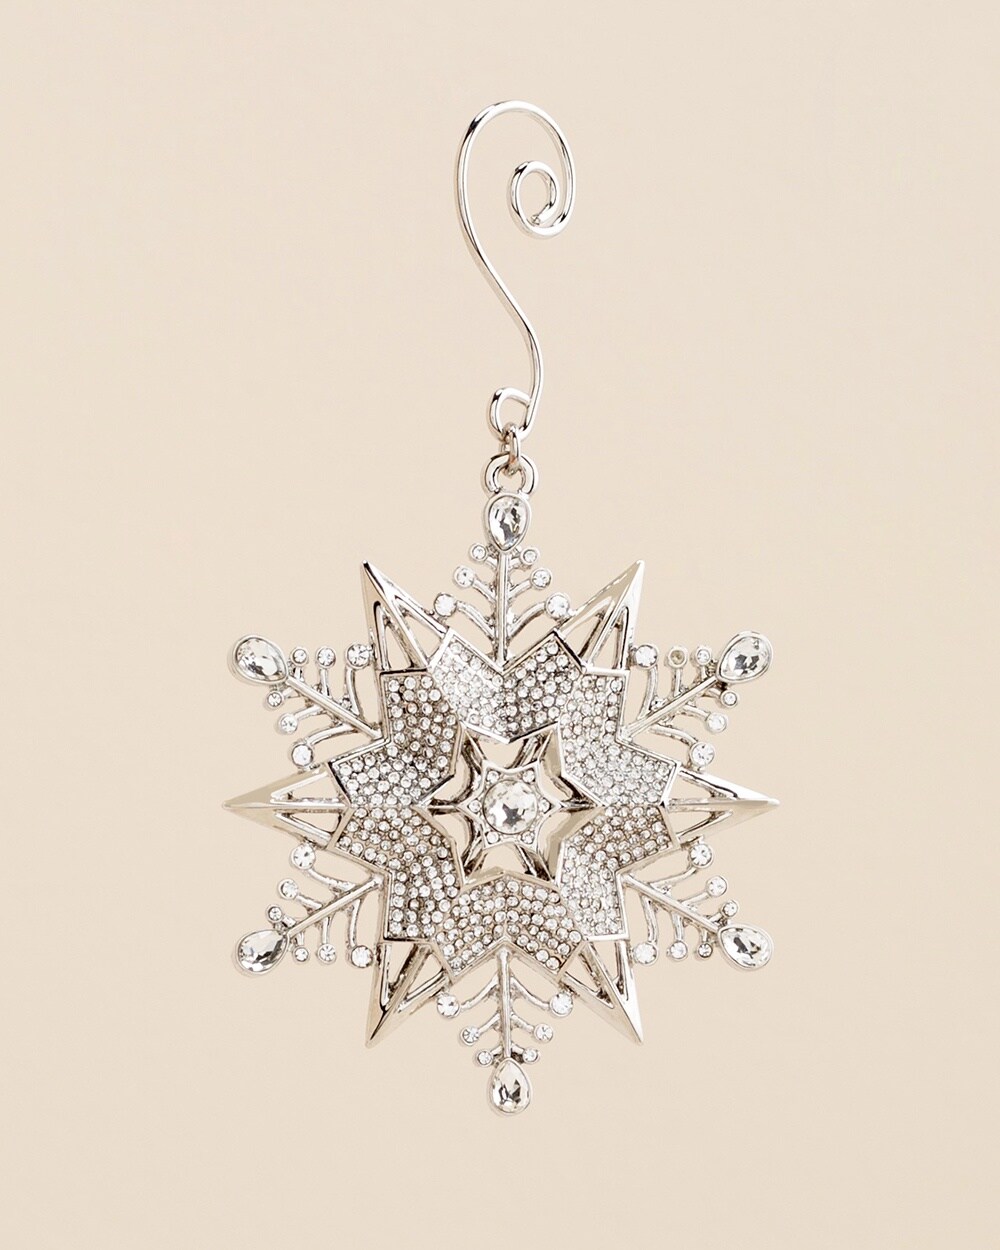 Silvertone Snowflake Ornament